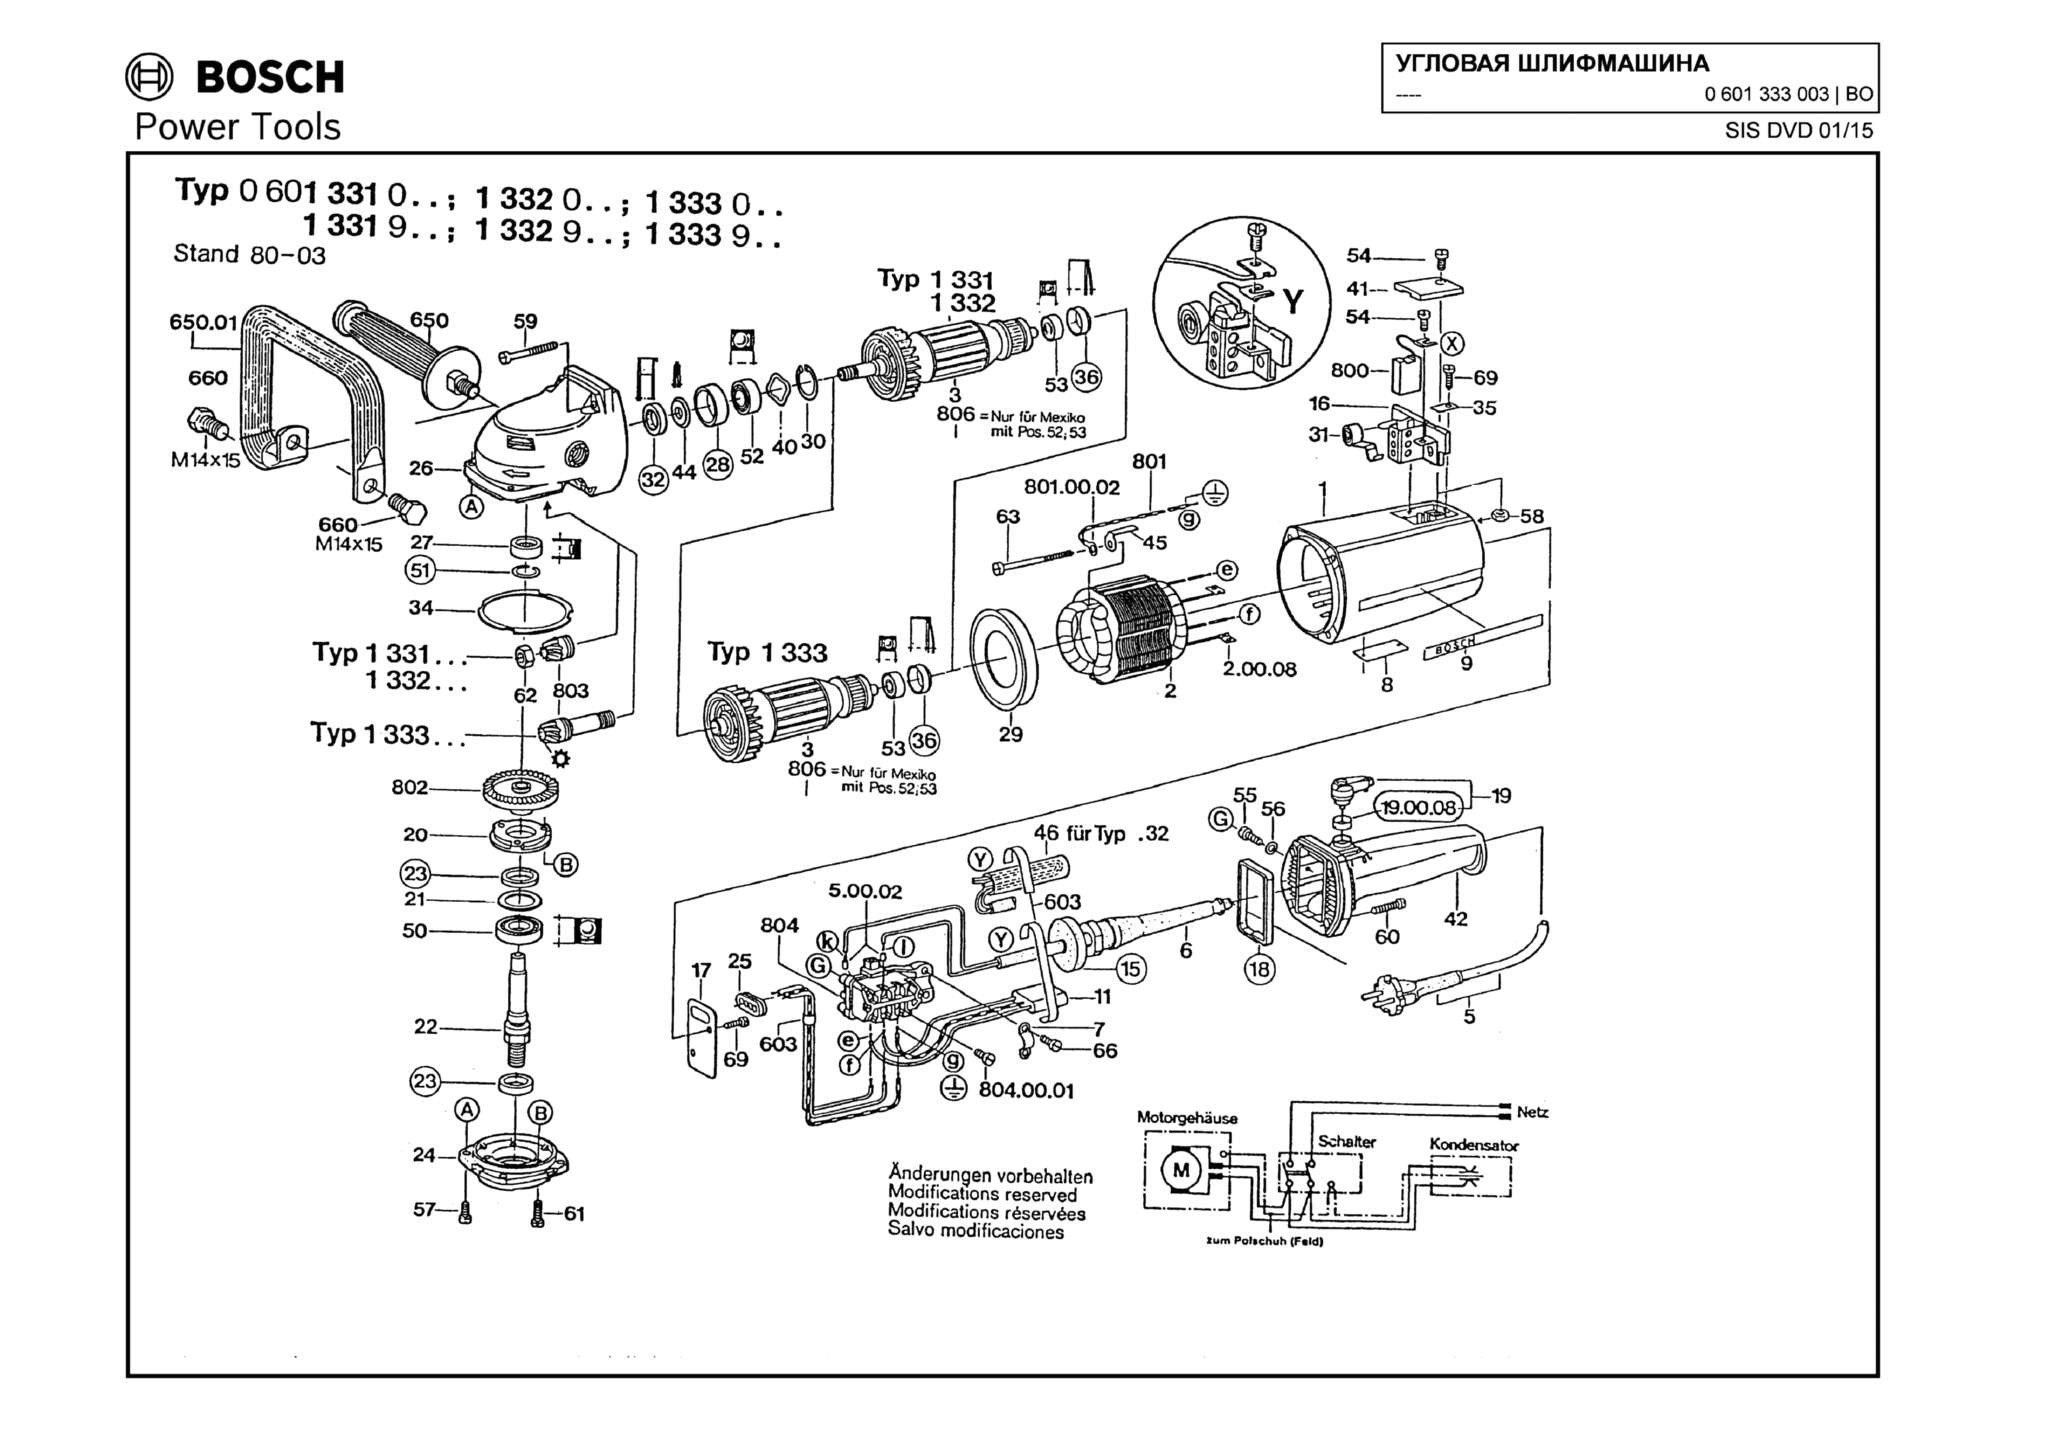 Запчасти, схема и деталировка Bosch (ТИП 0601333003)